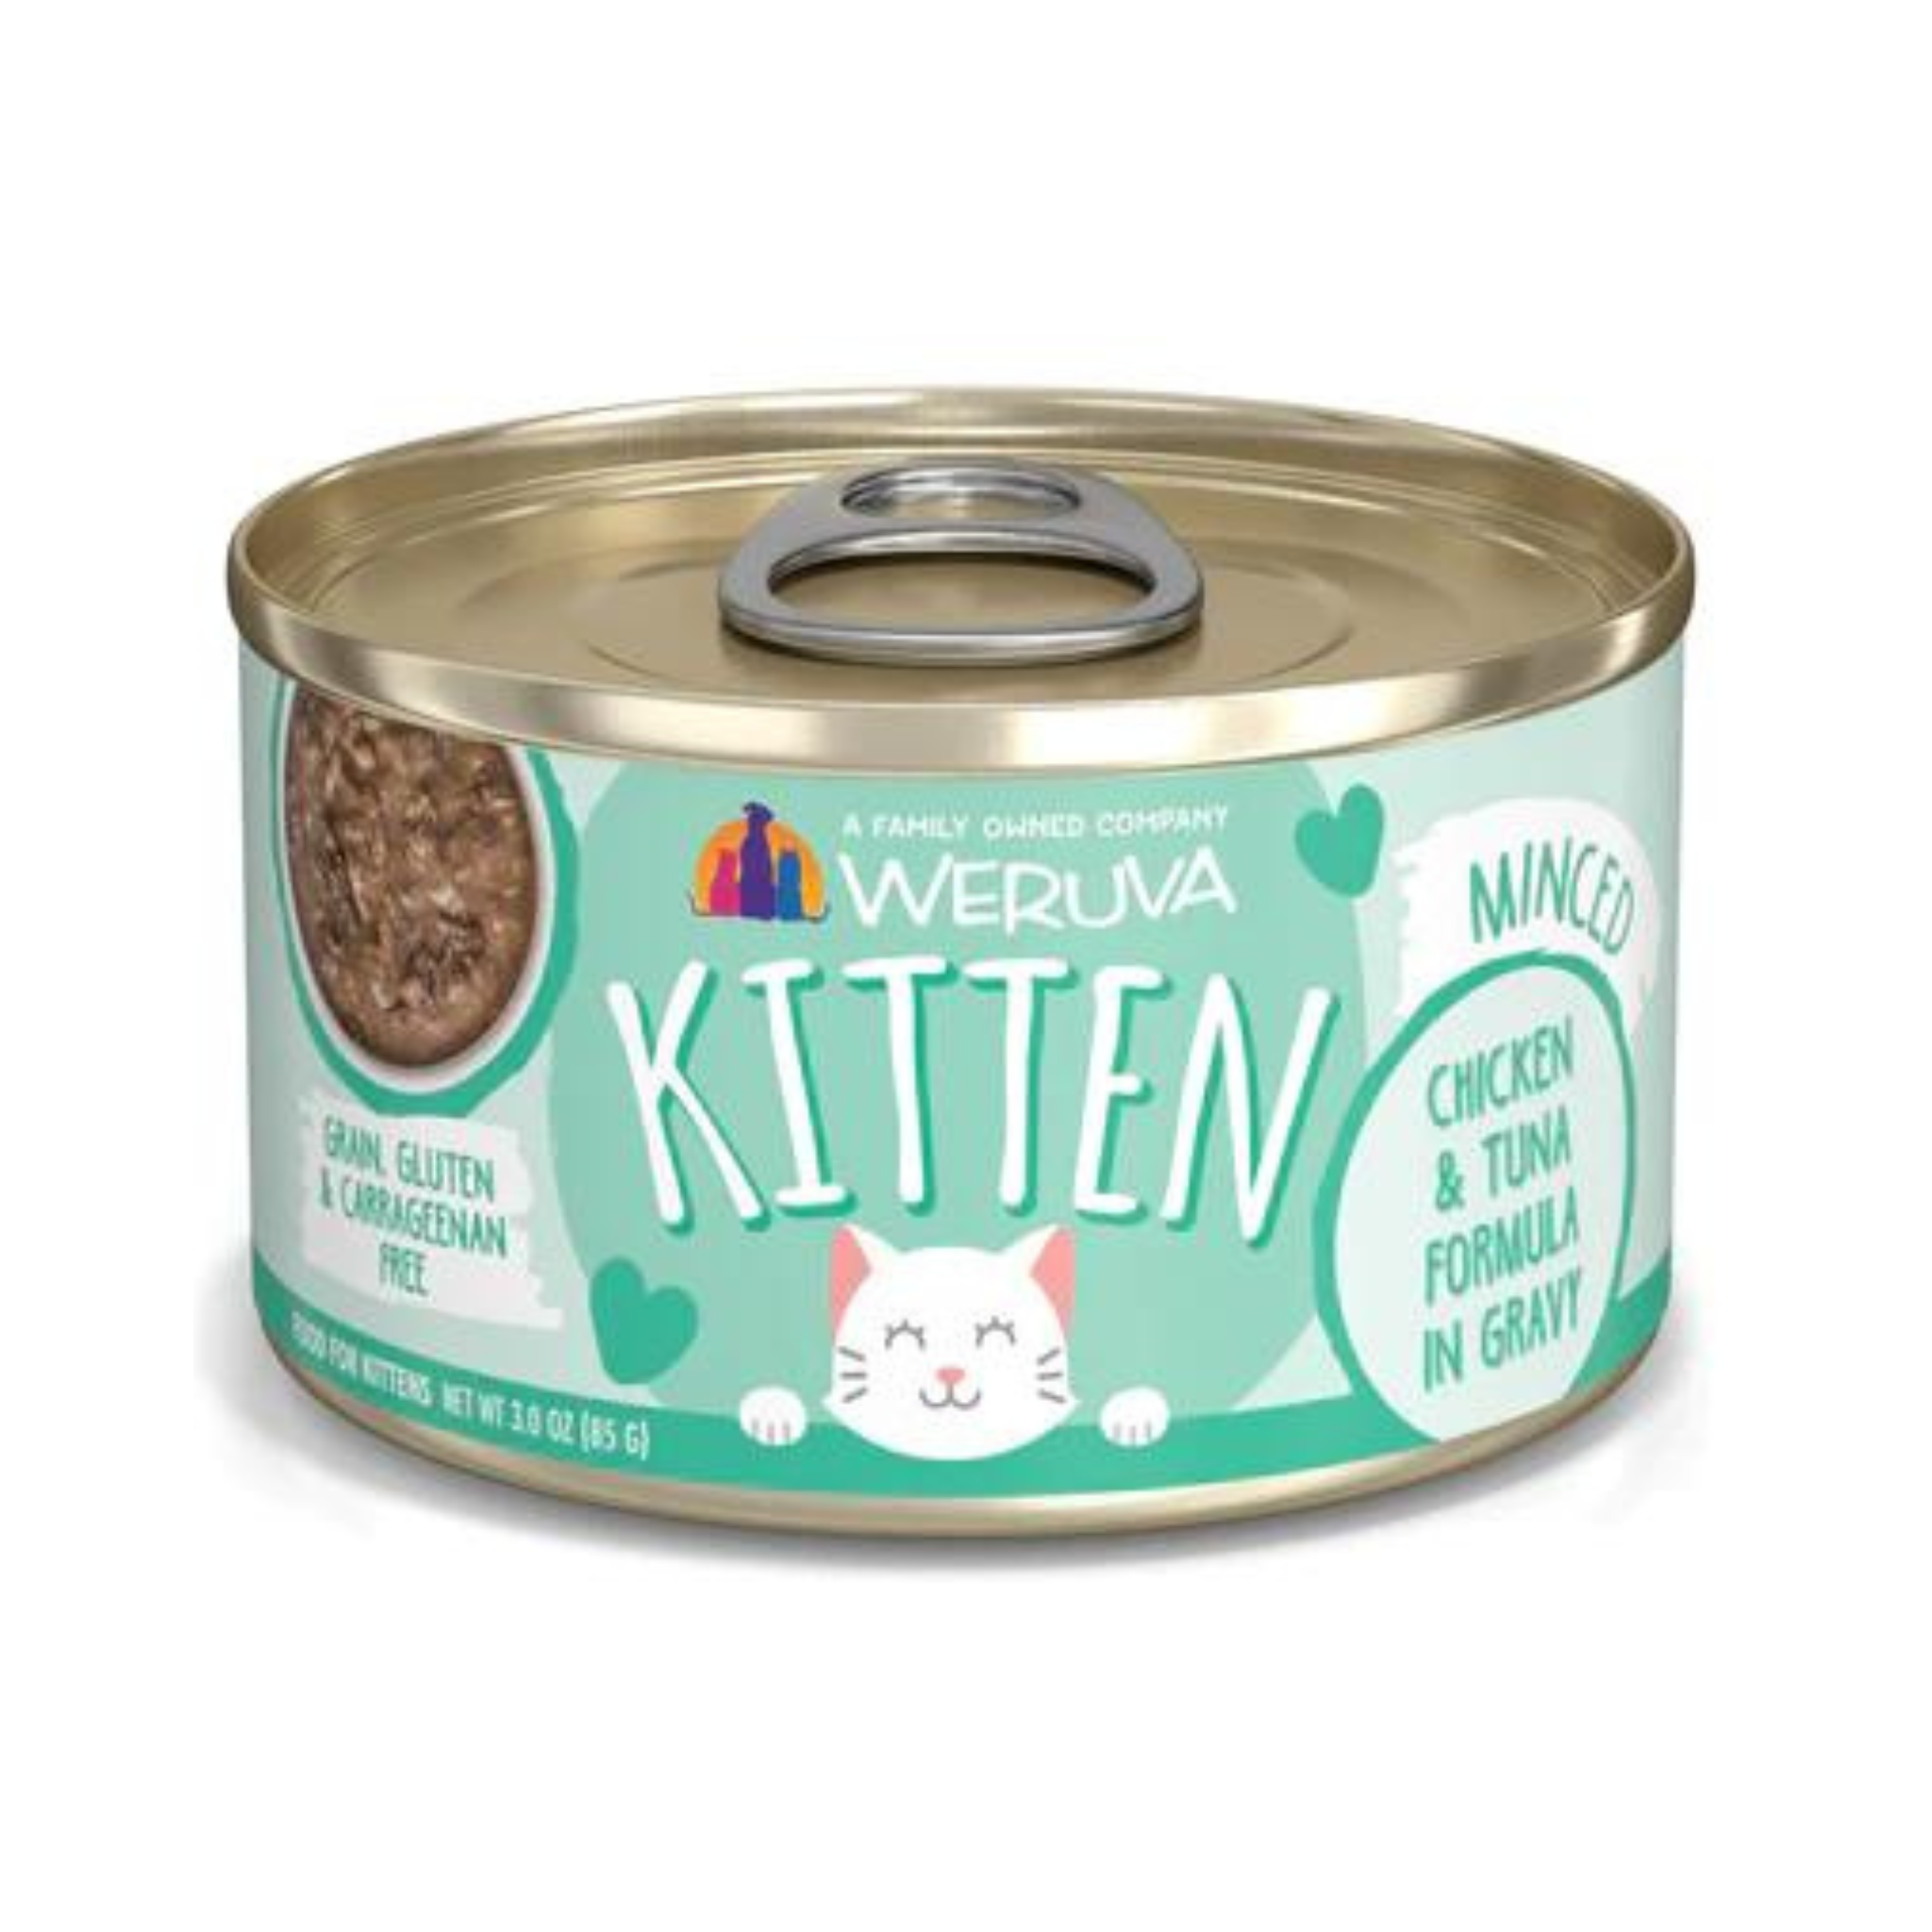 Weruva Kitten Tuna & Chicken Gravy Cat Canned